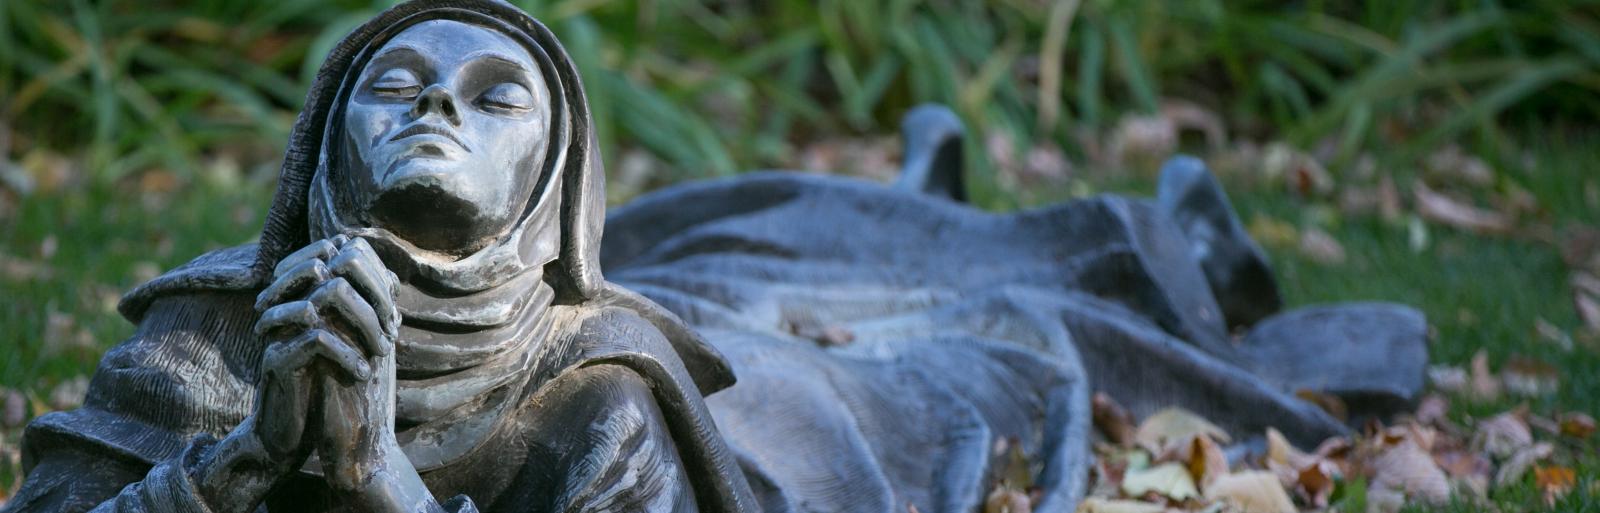 statue nun praying on lawn at Creighton University